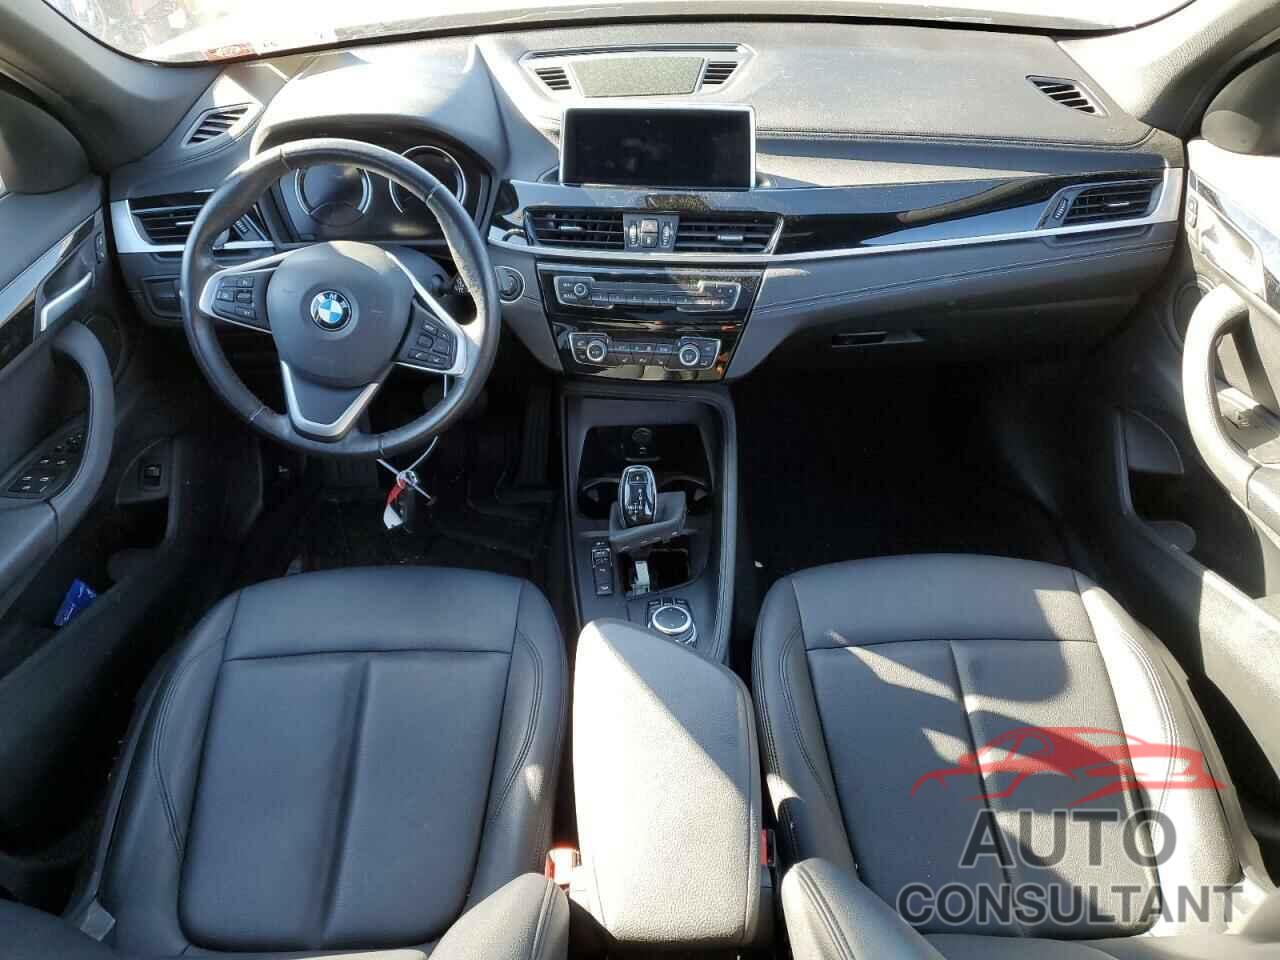 BMW X1 2022 - WBXJG9C03N5U70326